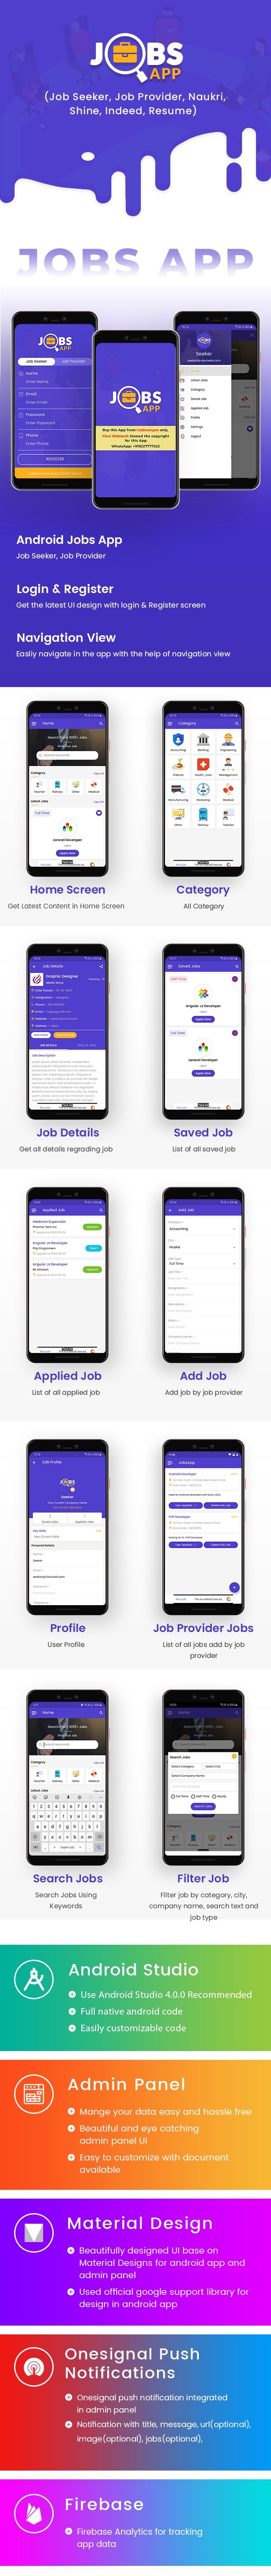 Android Jobs App (Job Seeker, Job Provider, Naukri, Shine, Indeed, Resume) - 8